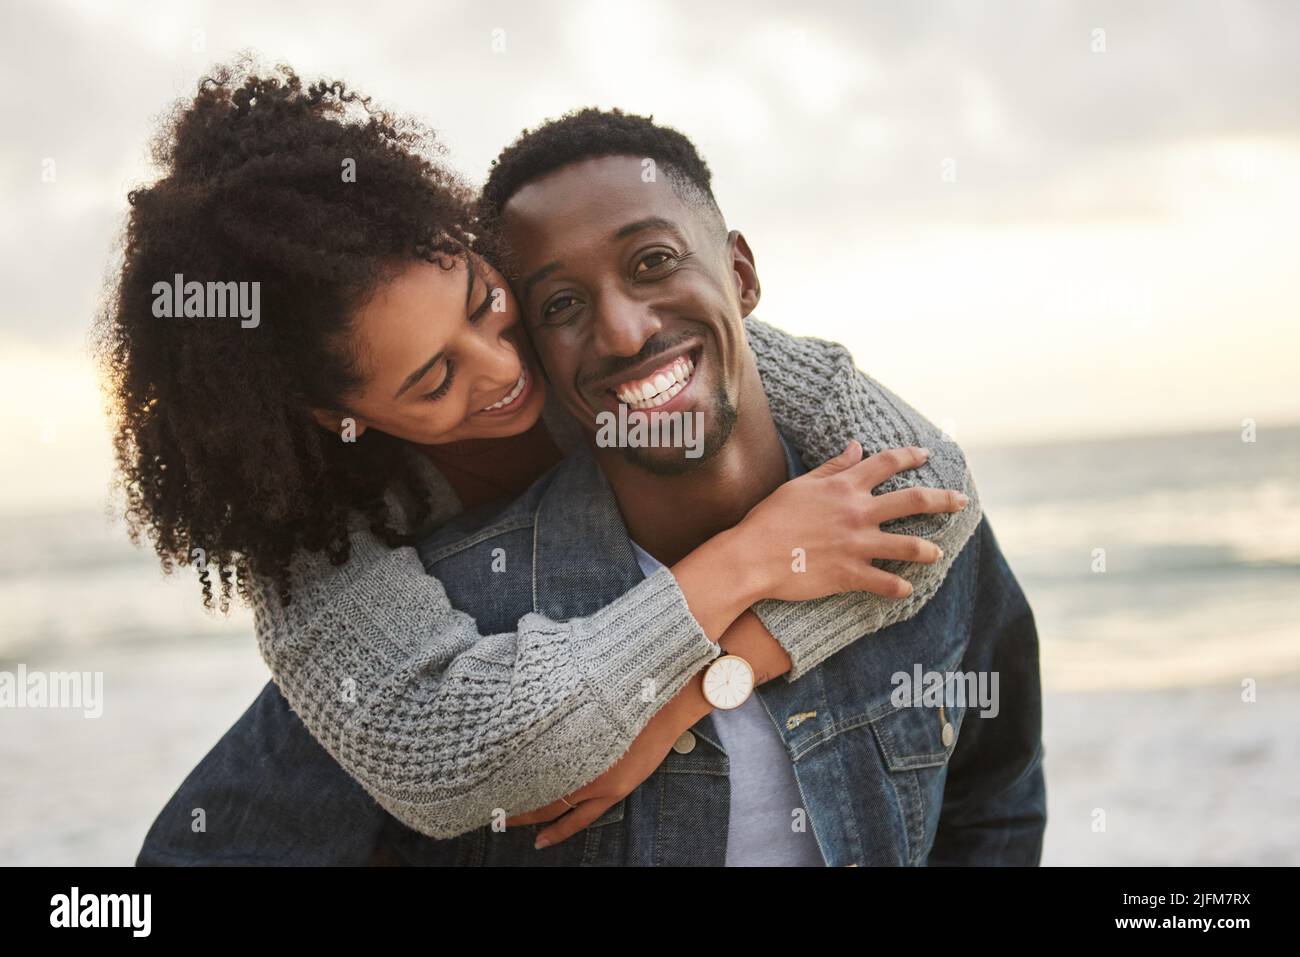 Una joven pareja multiétnica sonriendo pasando una tarde divertida en la playa Foto de stock